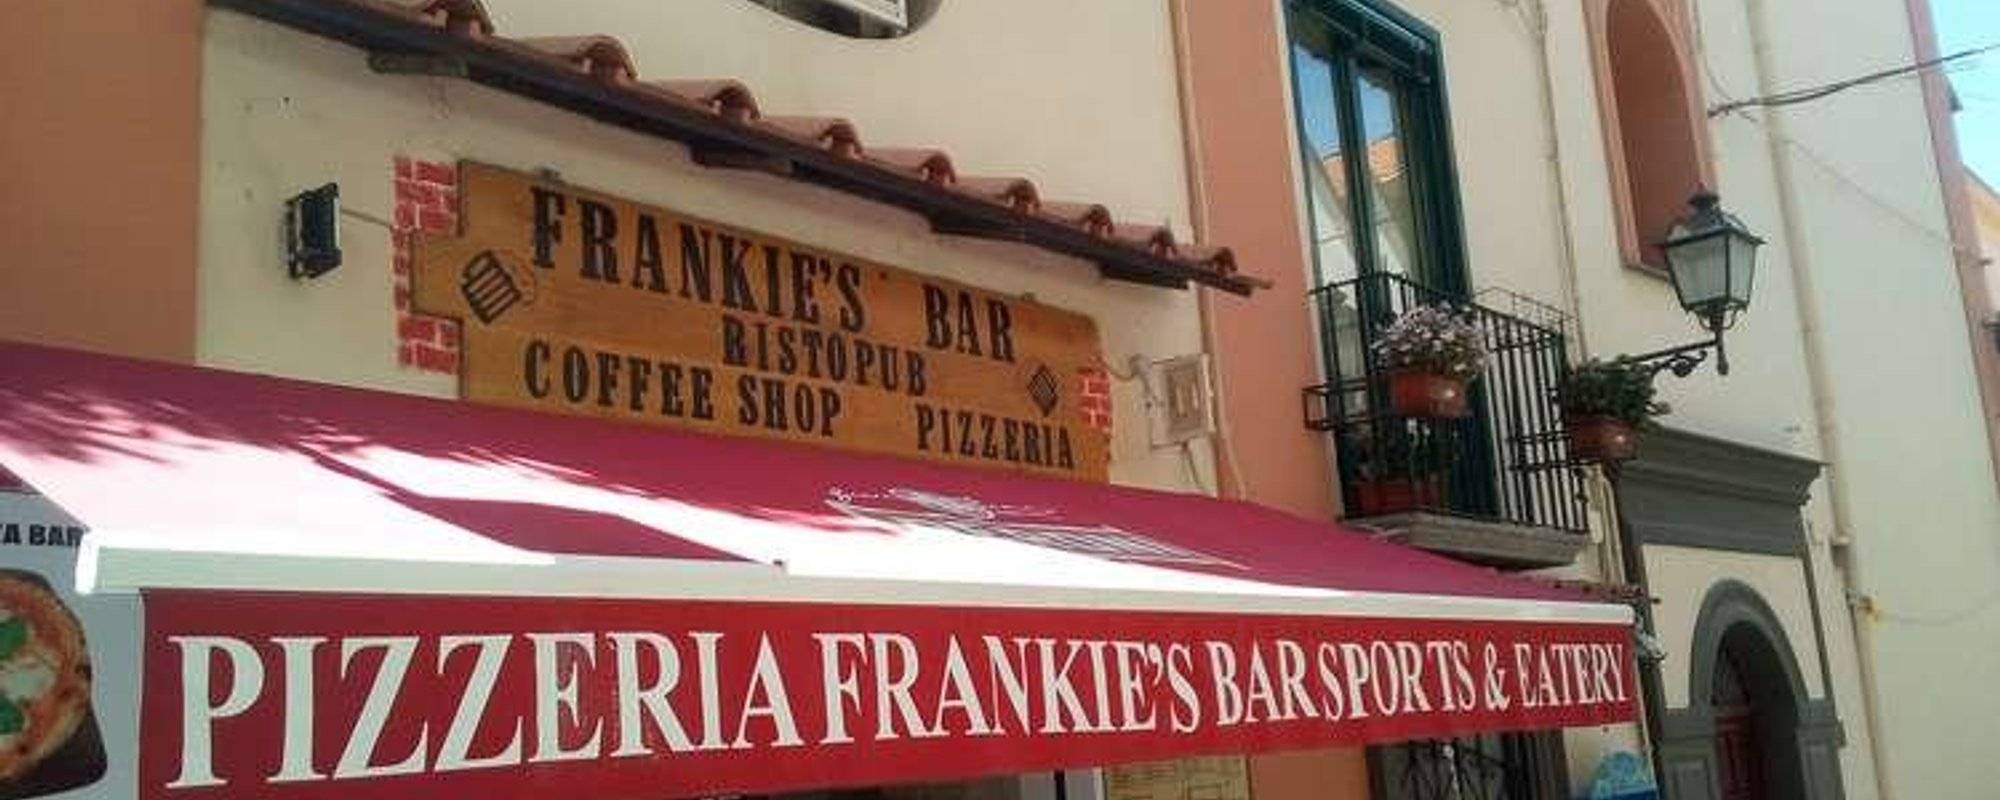 Frankie's Bar Sports & Eatery - Sorrento (NA) Italy